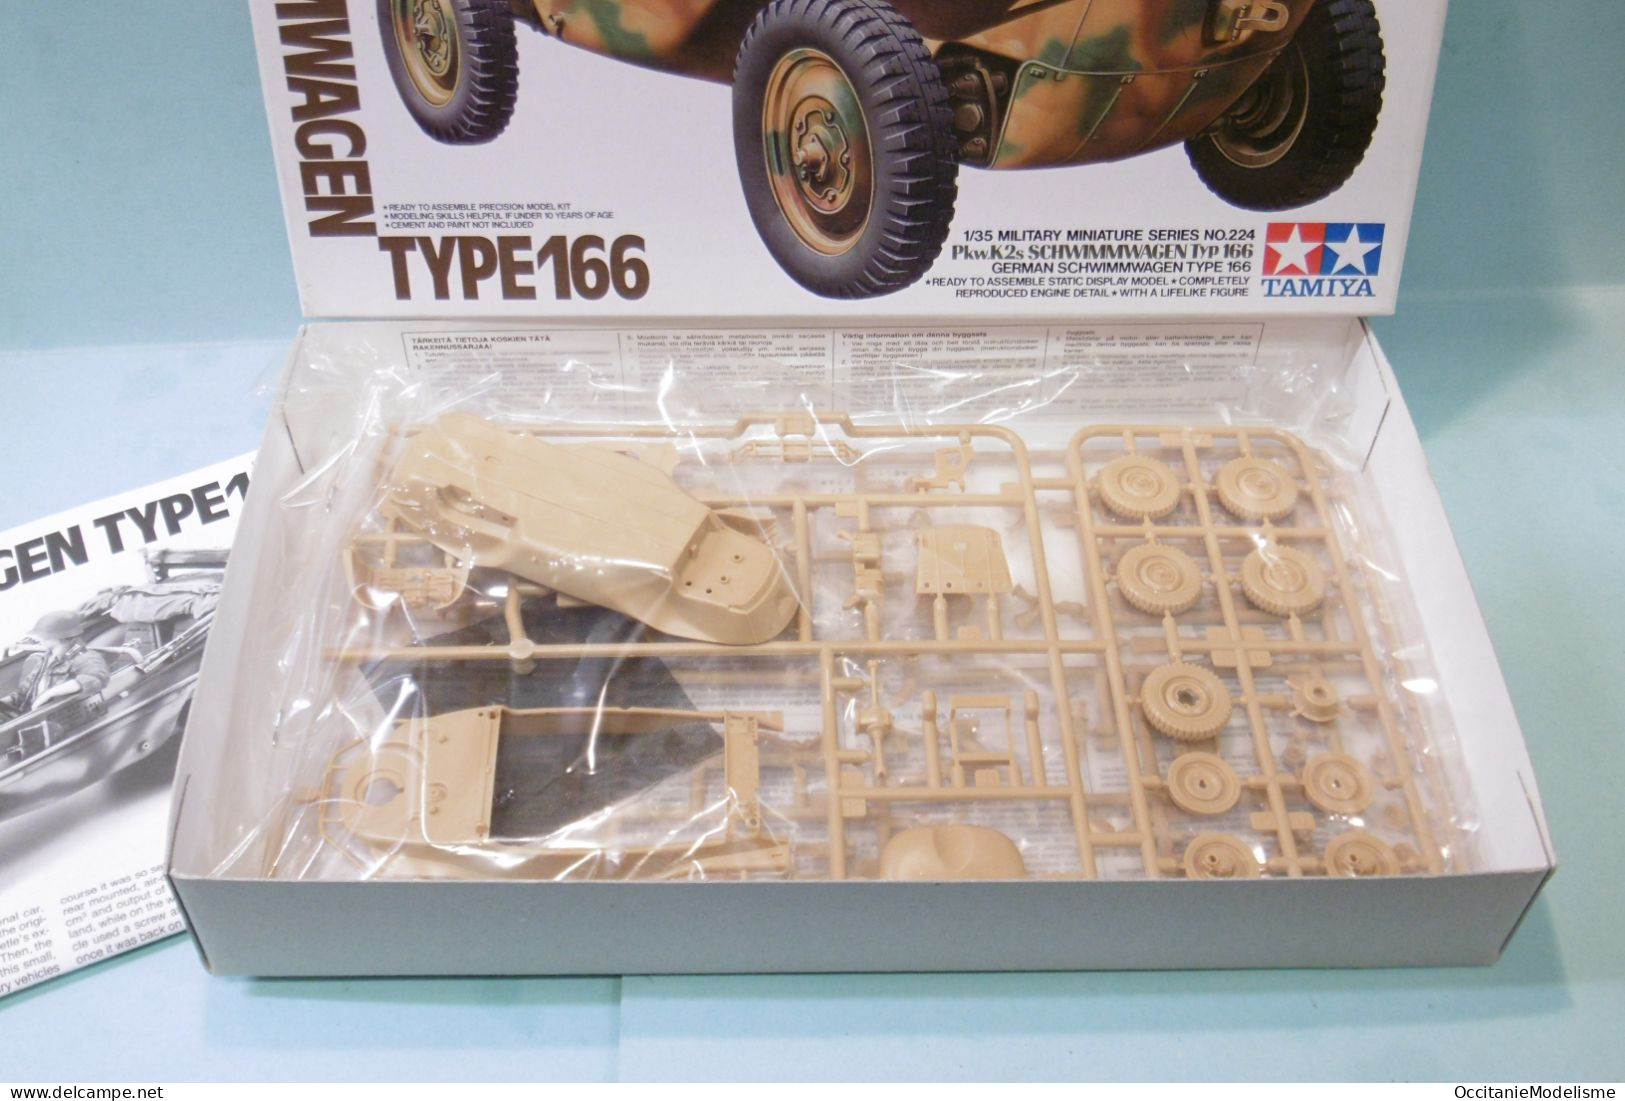 Tamiya - SCHWIMMWAGEN TYPE 166 Amphibie WWII Militaire Maquette Kit Plastique Réf. 35224 BO 1/35 - Militaire Voertuigen